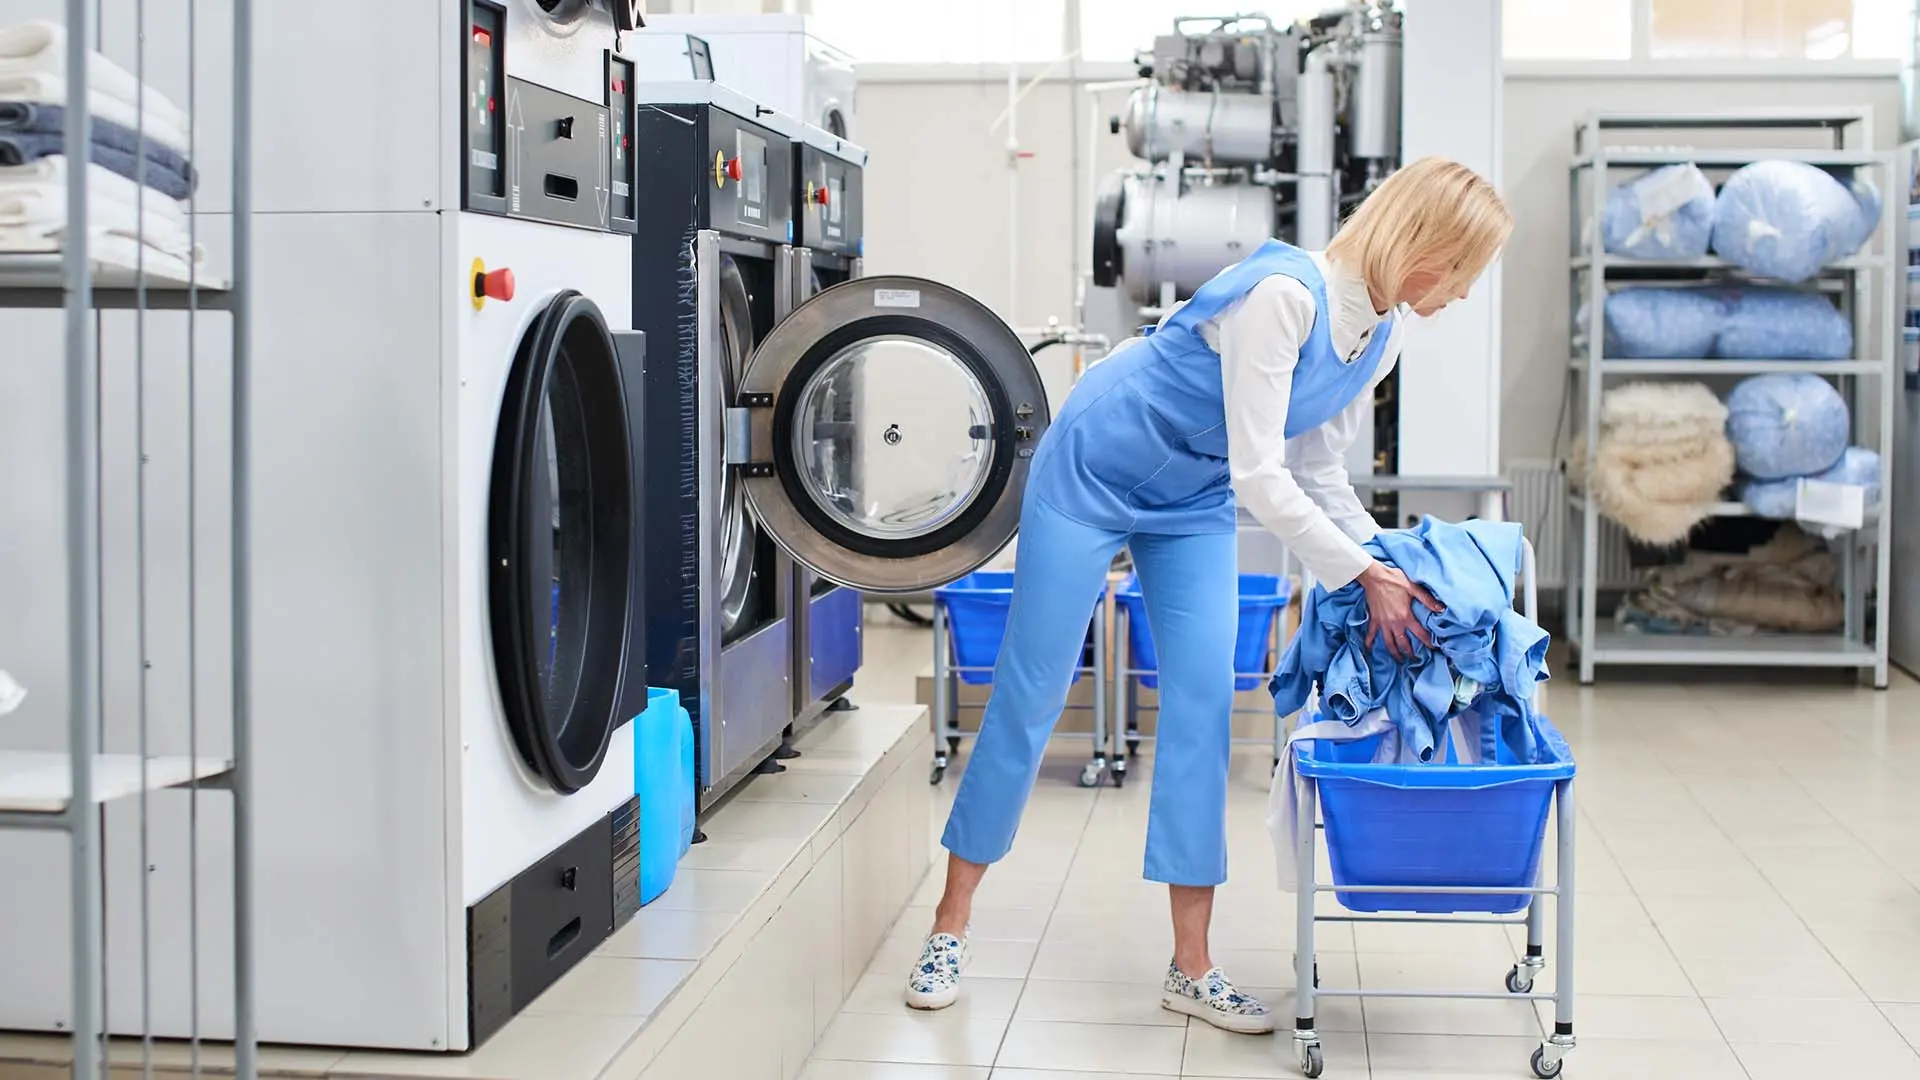 que le ponen ala ropa en las lavanderias - Qué productos se utilizan en una lavandería